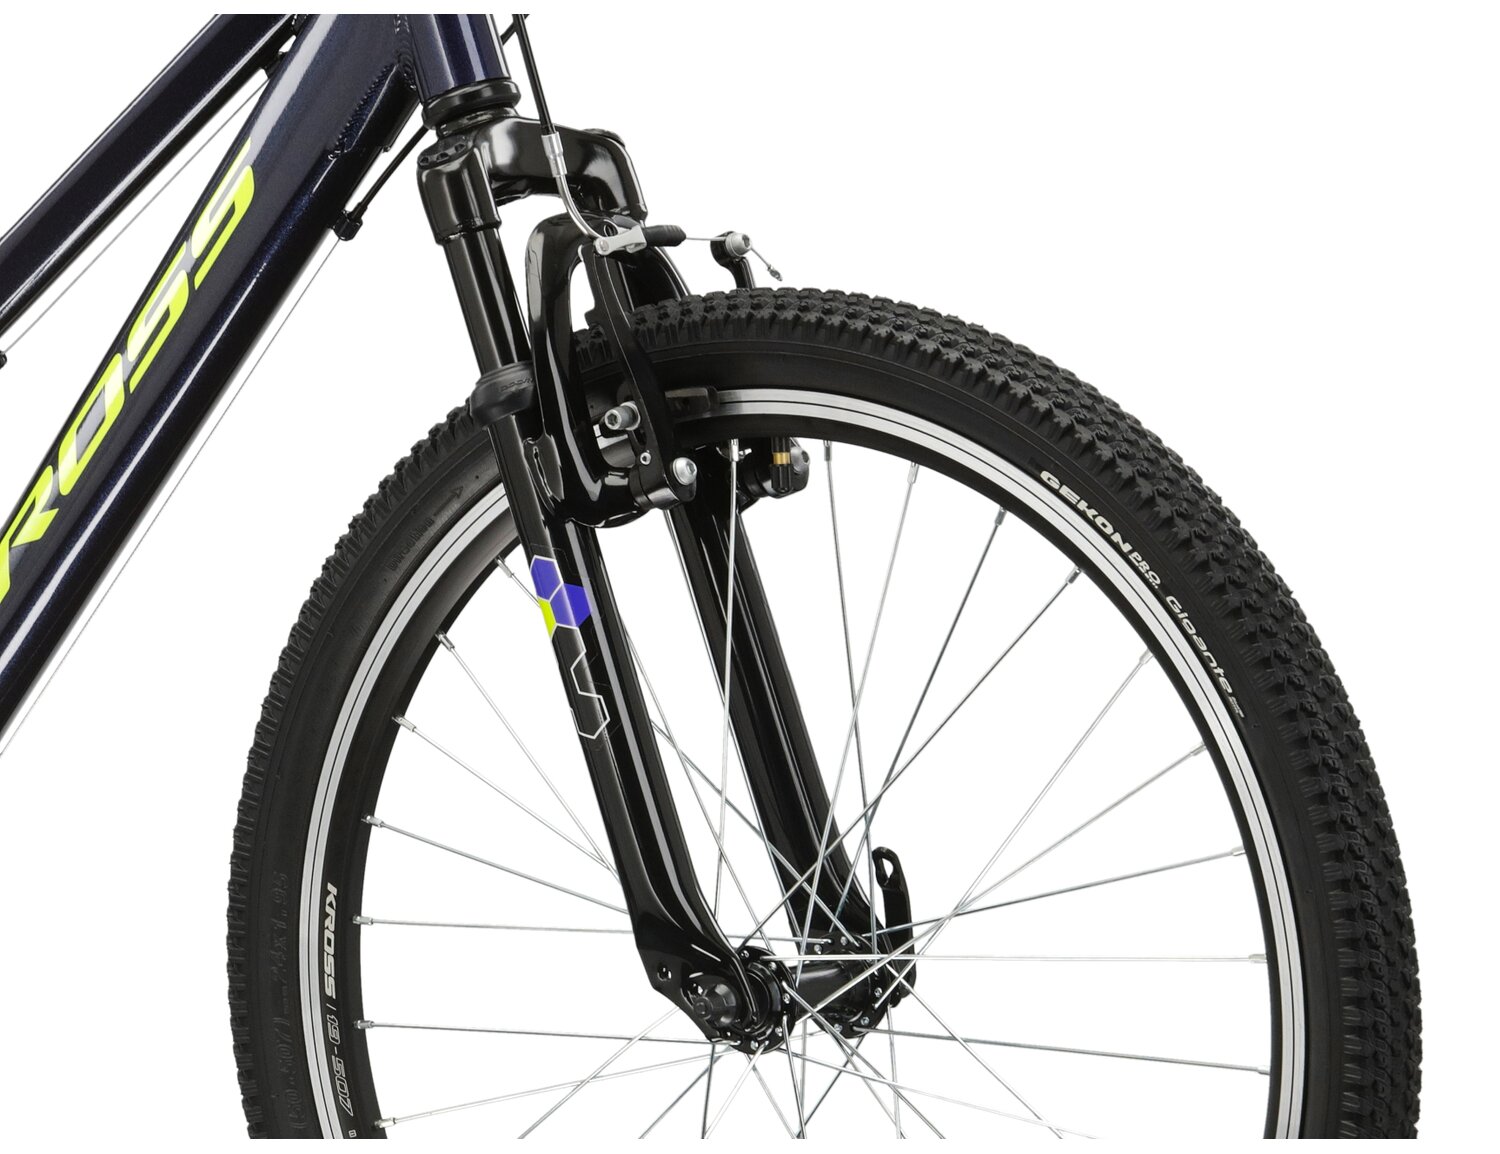  Aluminowa rama, amortyzowany widelec o skoku 40mm oraz opony o szerokości 1,95 cala w rowerze juniorskim KROSS Hexagon JR 1.0 